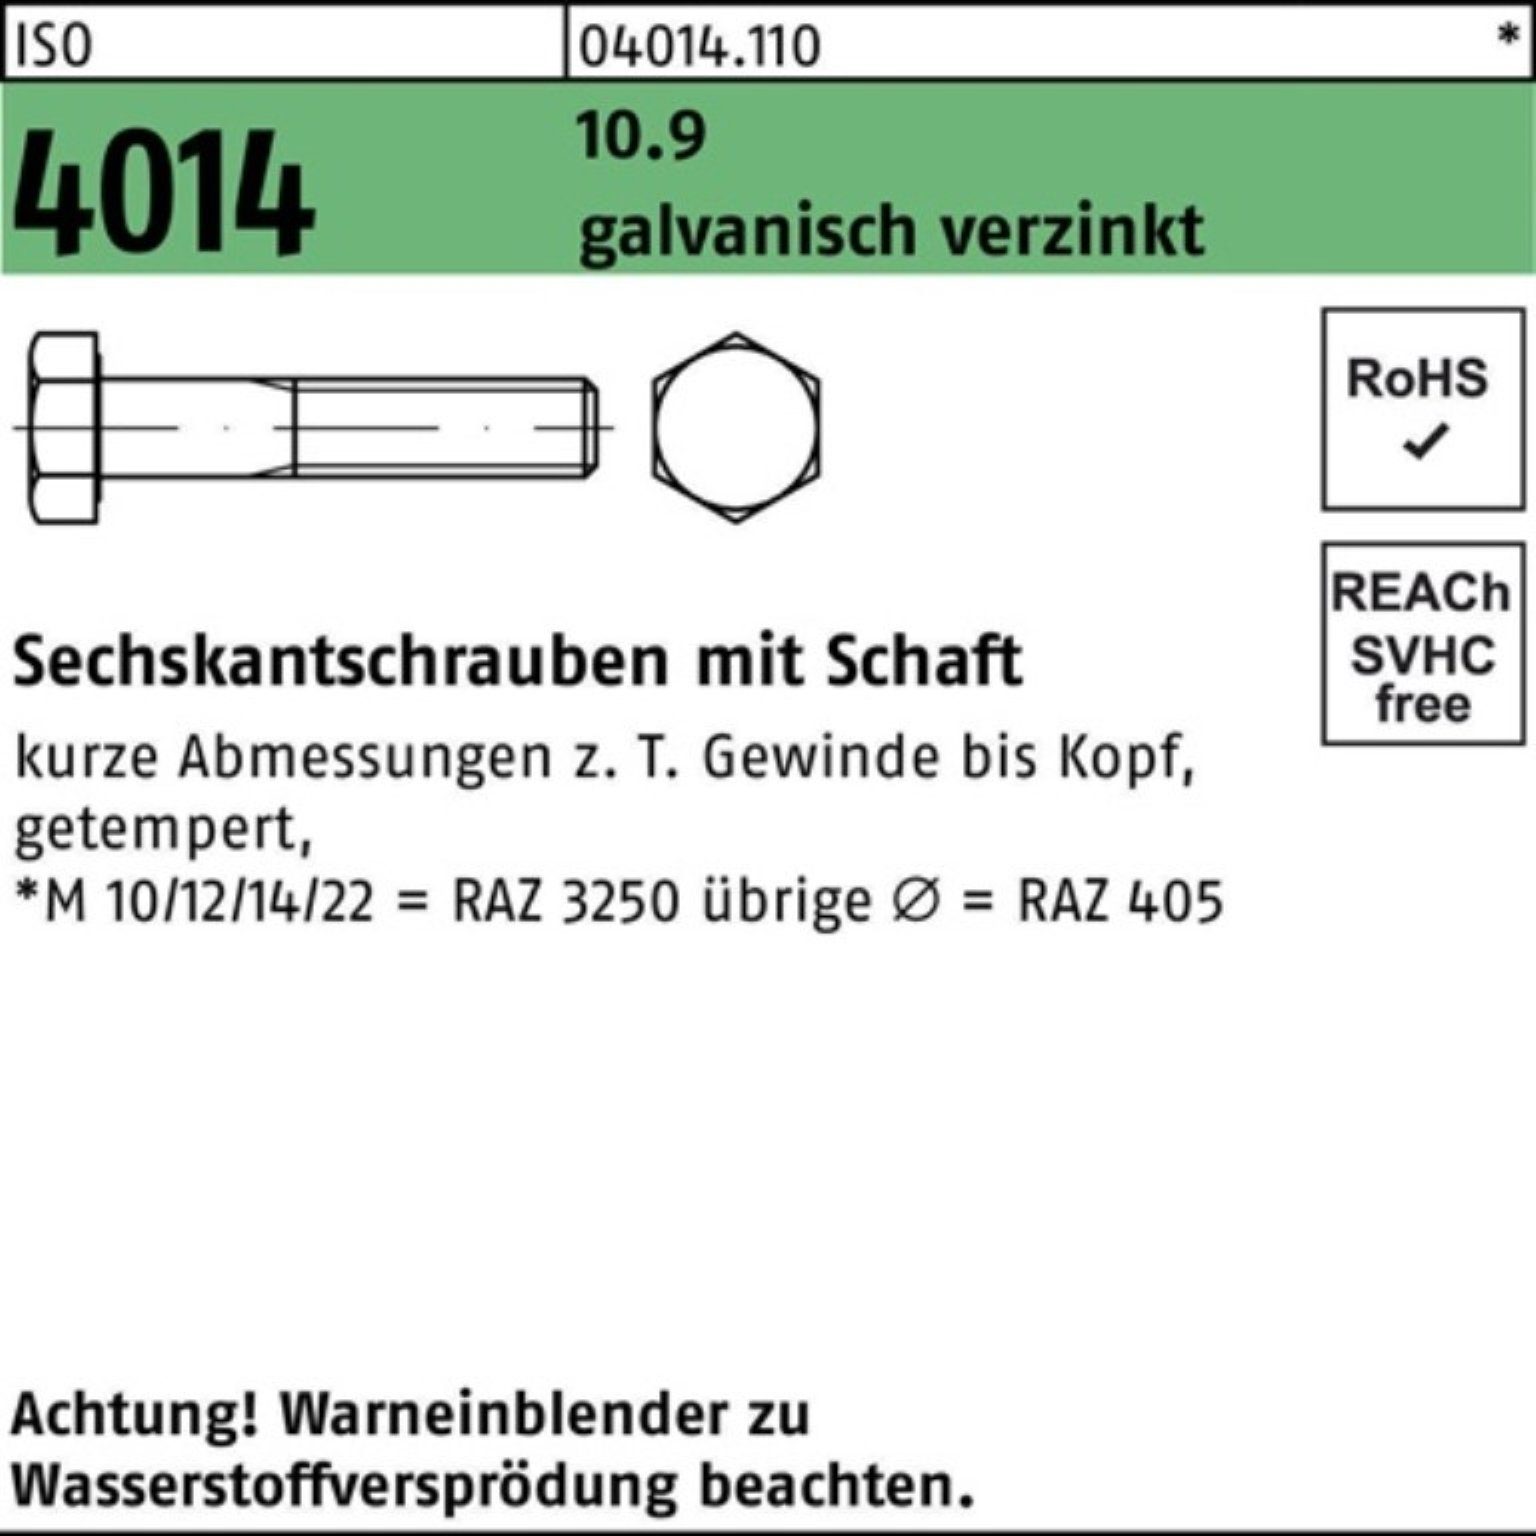 Bufab Sechskantschraube 100er Pack Sechskantschraube galv.verz. 4014 140 Schaft M18x 10.9 ISO